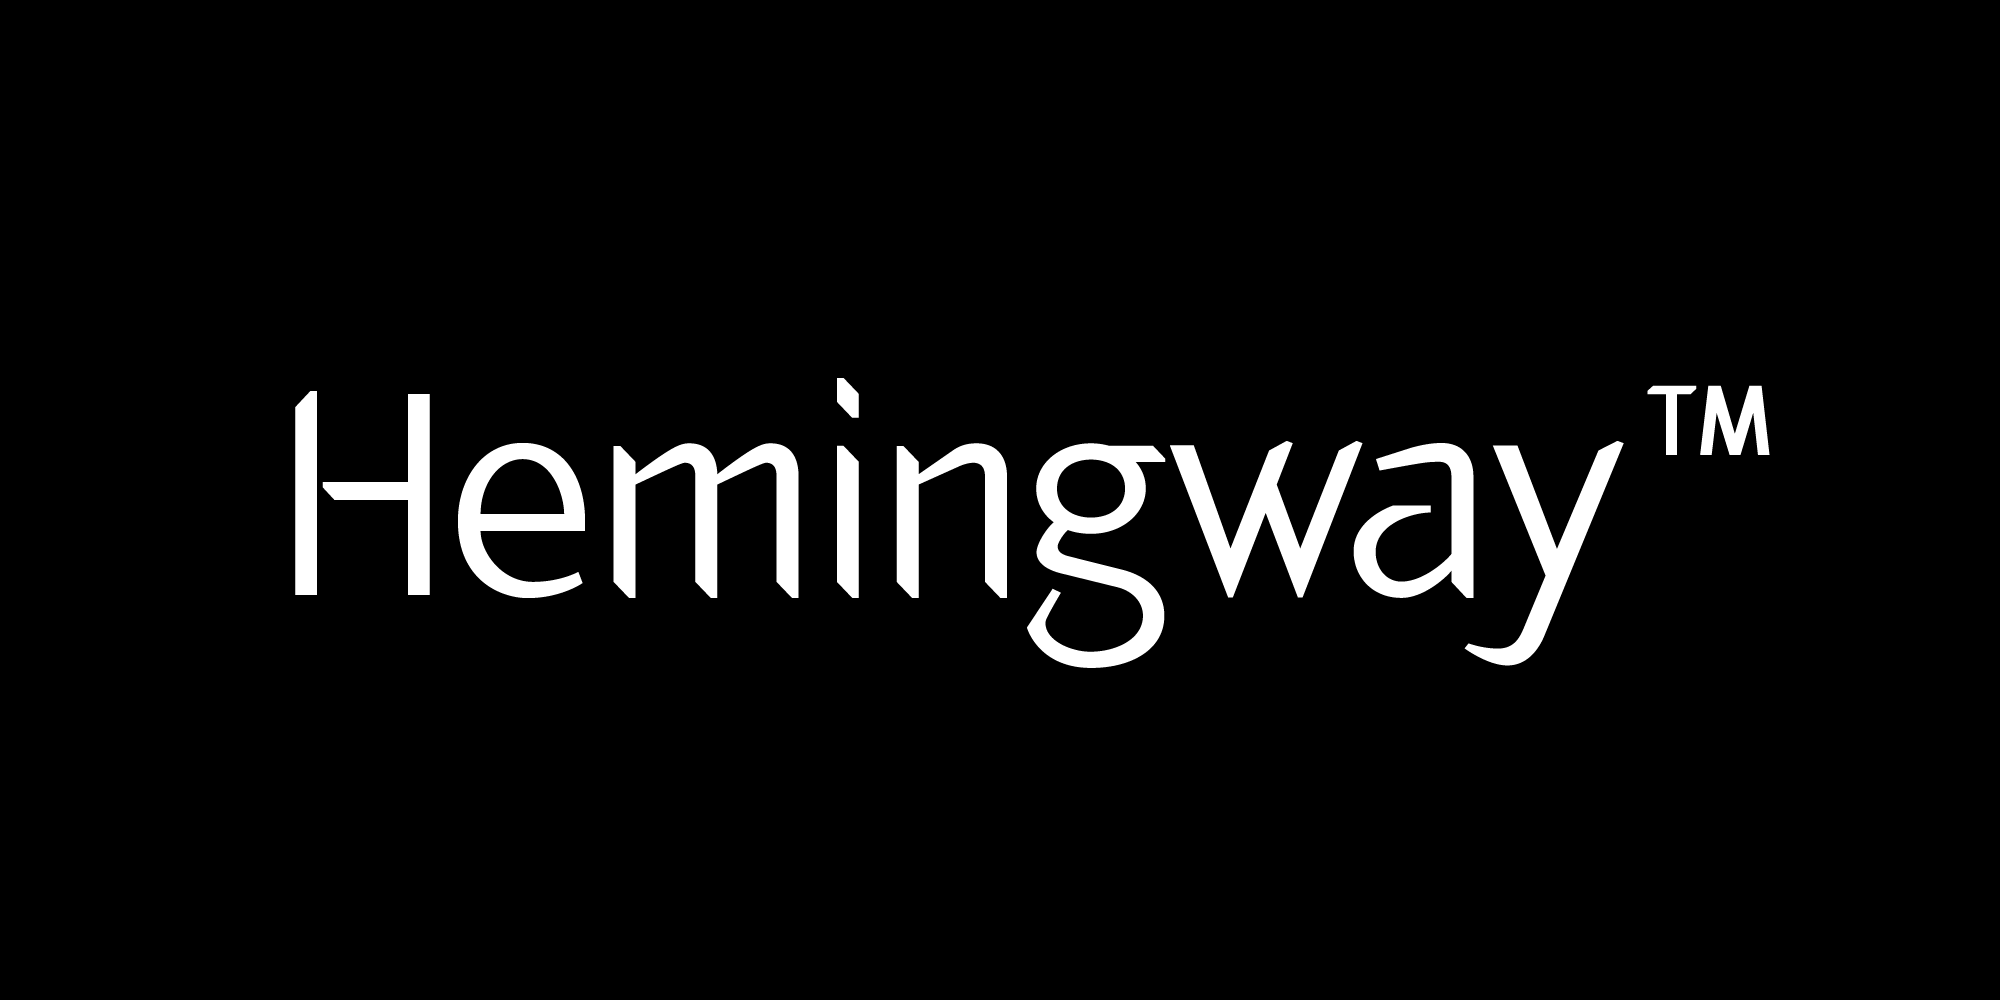 Hemingway font nameplate